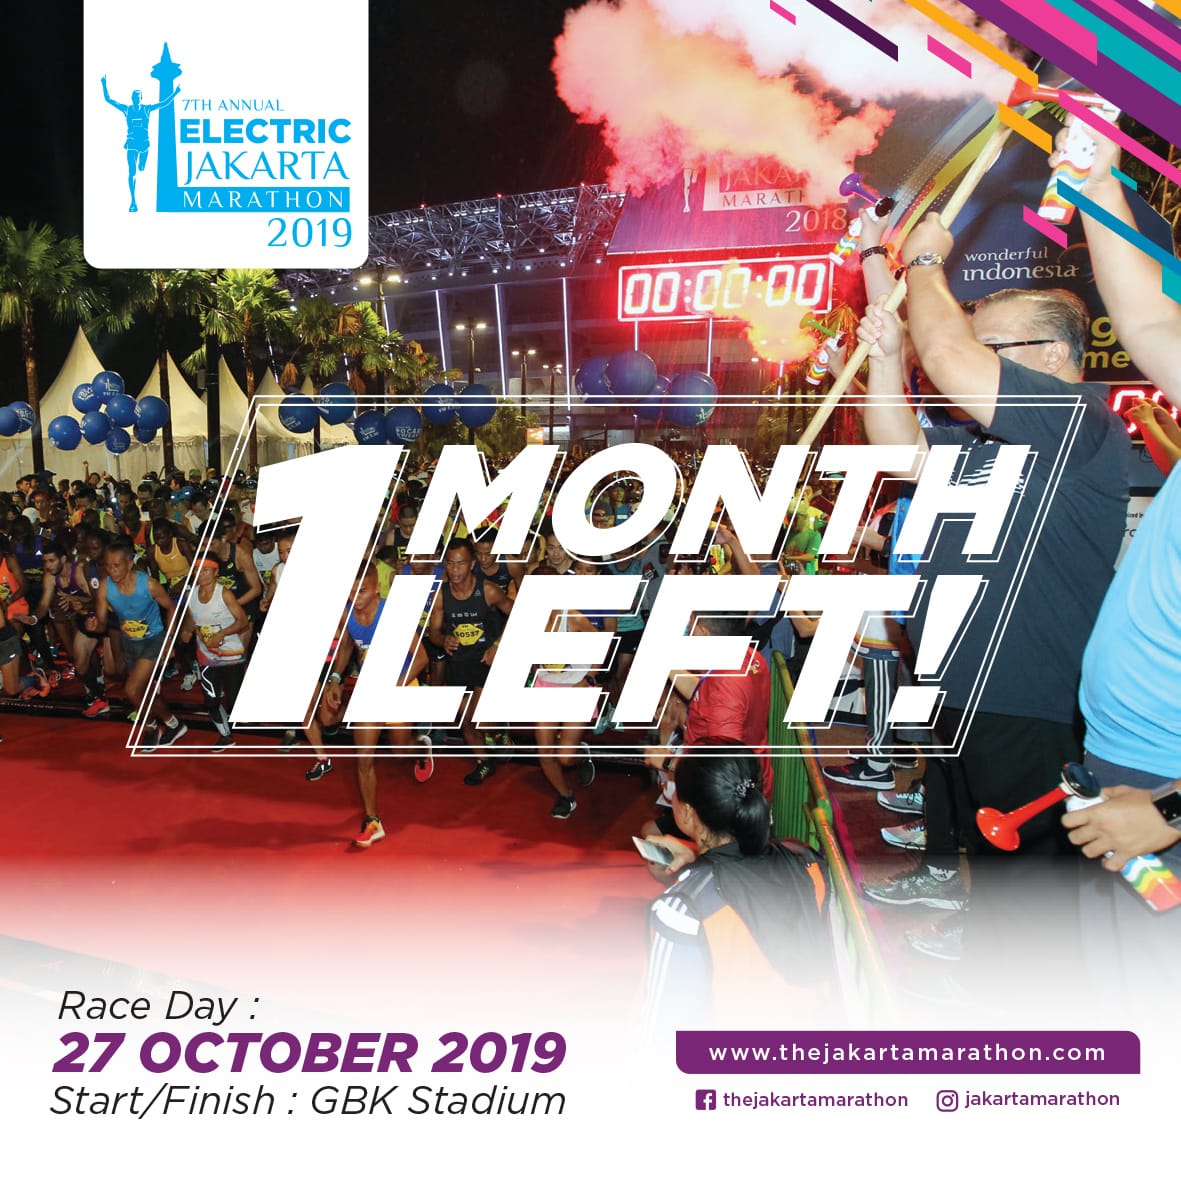 Only 1 month left! Get ready Runners!⁣
⁣
#jakmar2019⁣
#jakartamarathon⁣
#onemonthleft